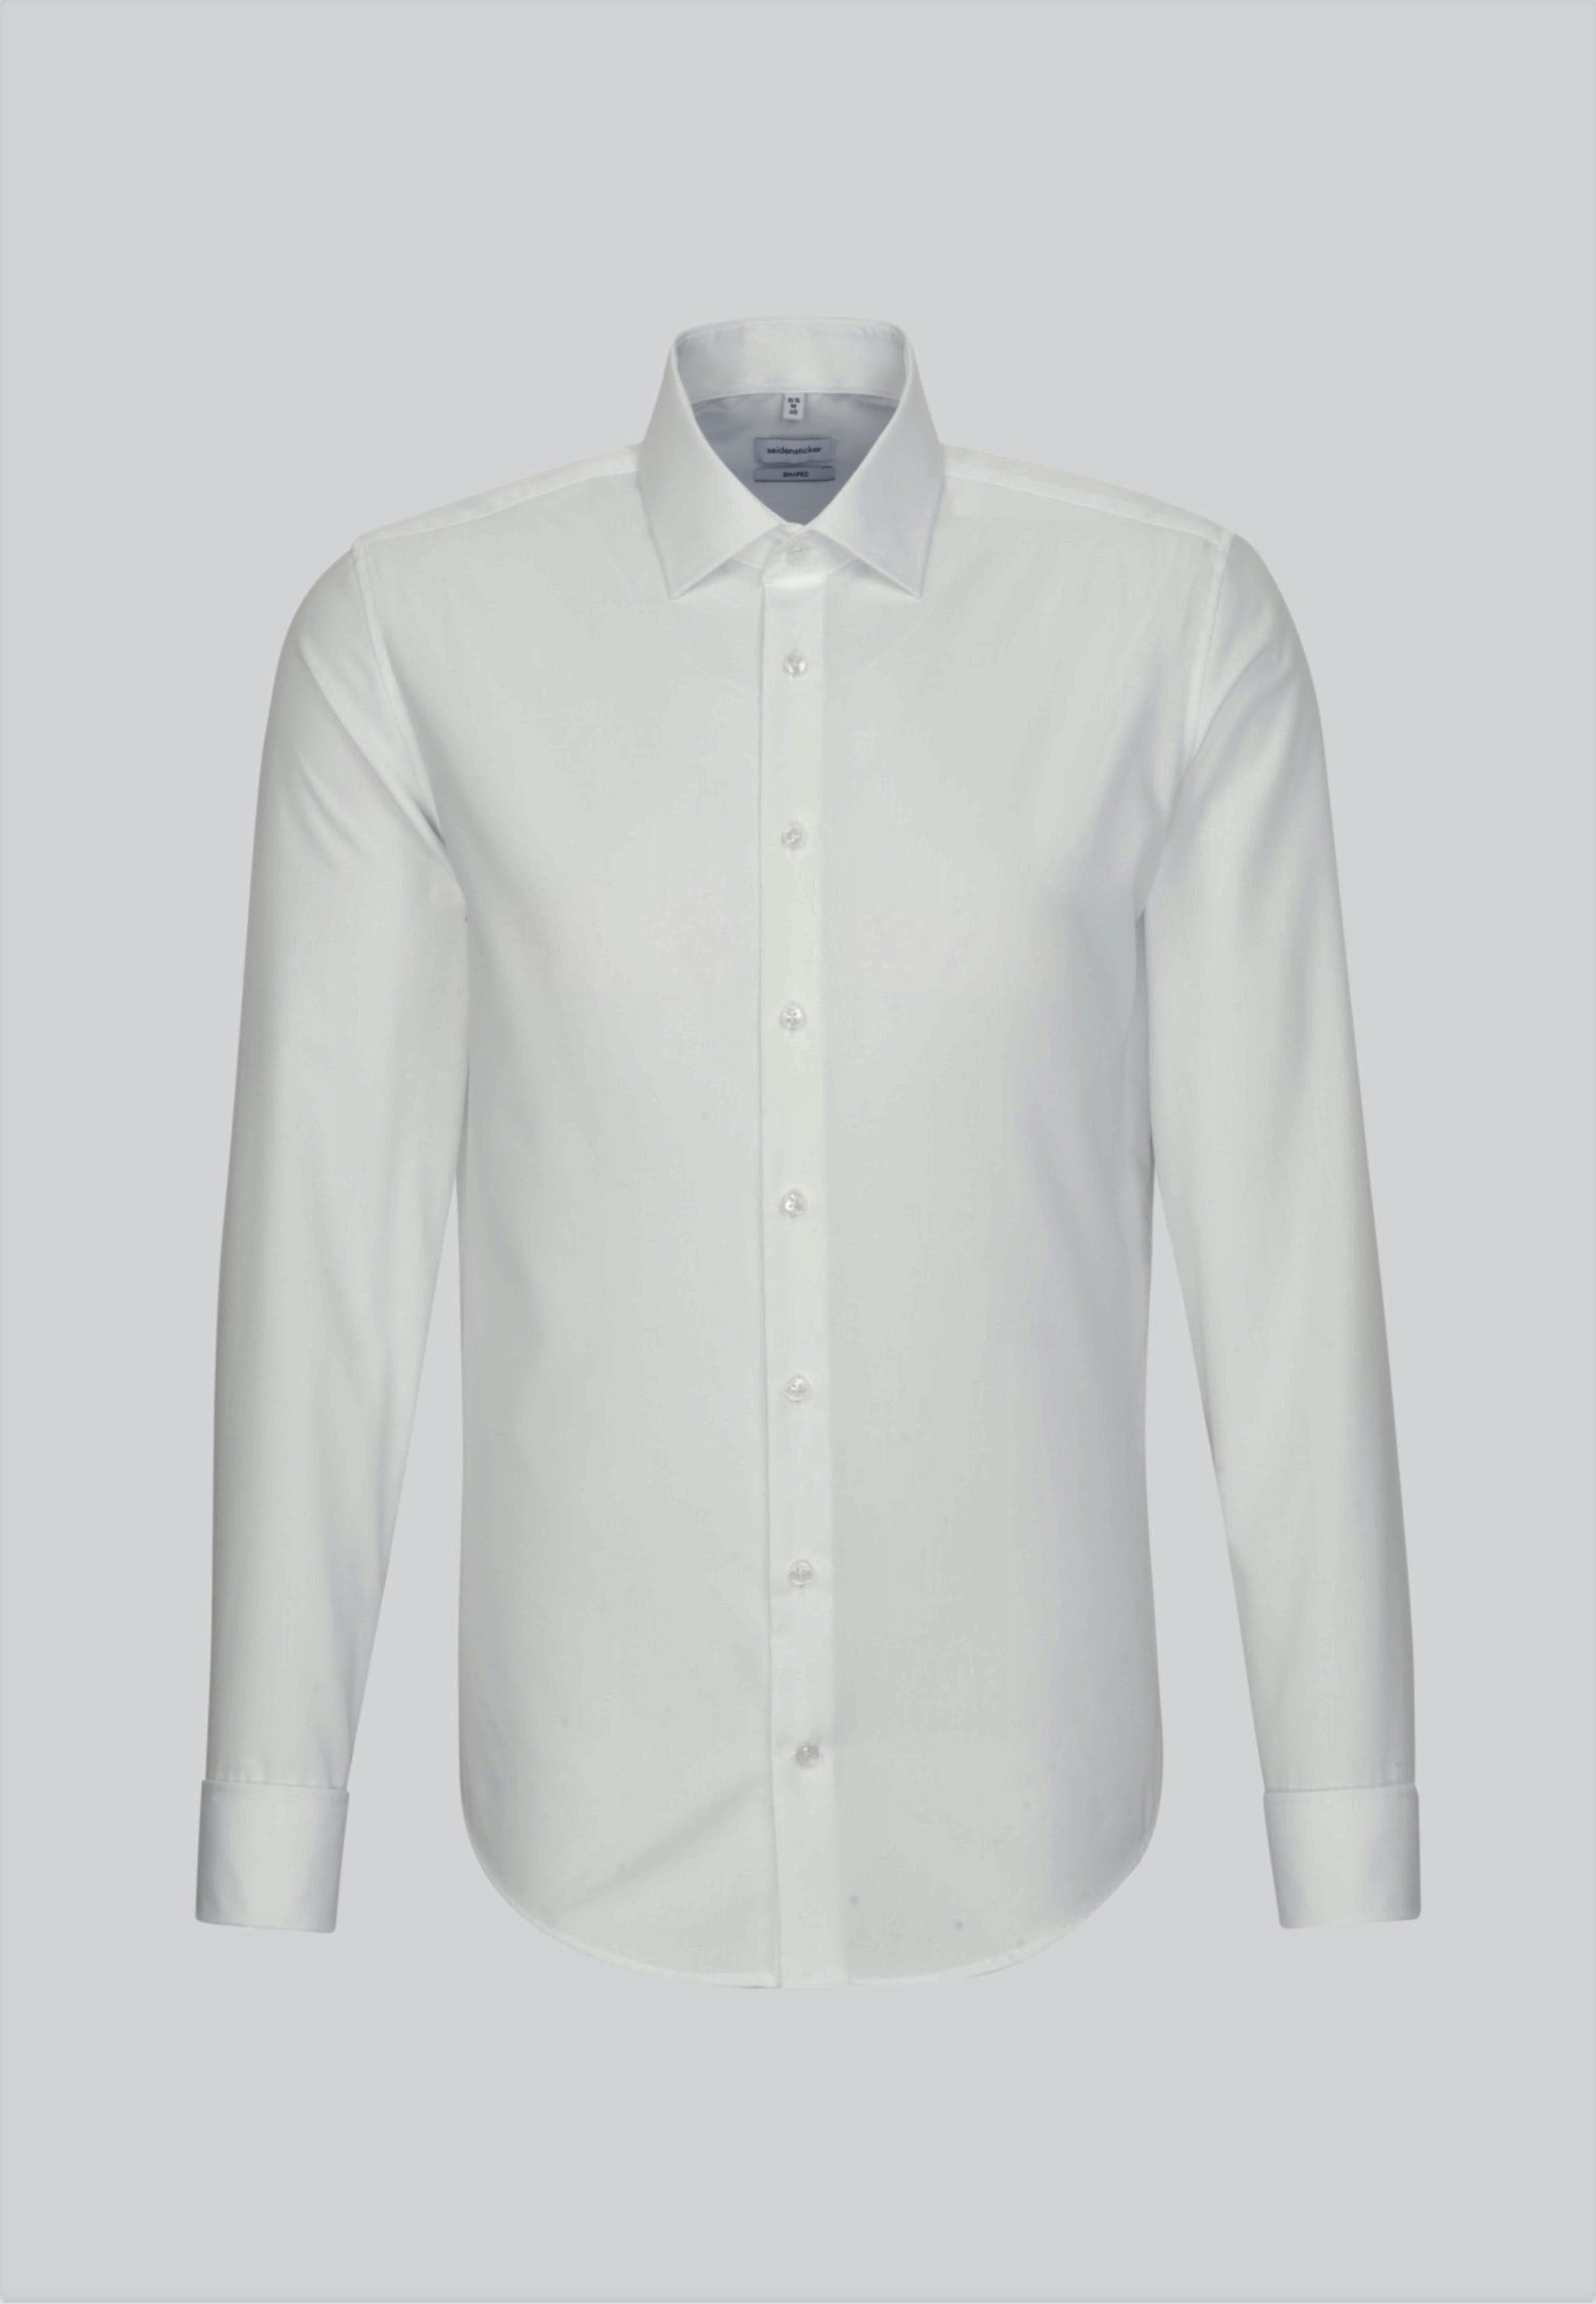 Seidensticker Double Cuff White Tailored Fit Shirt.